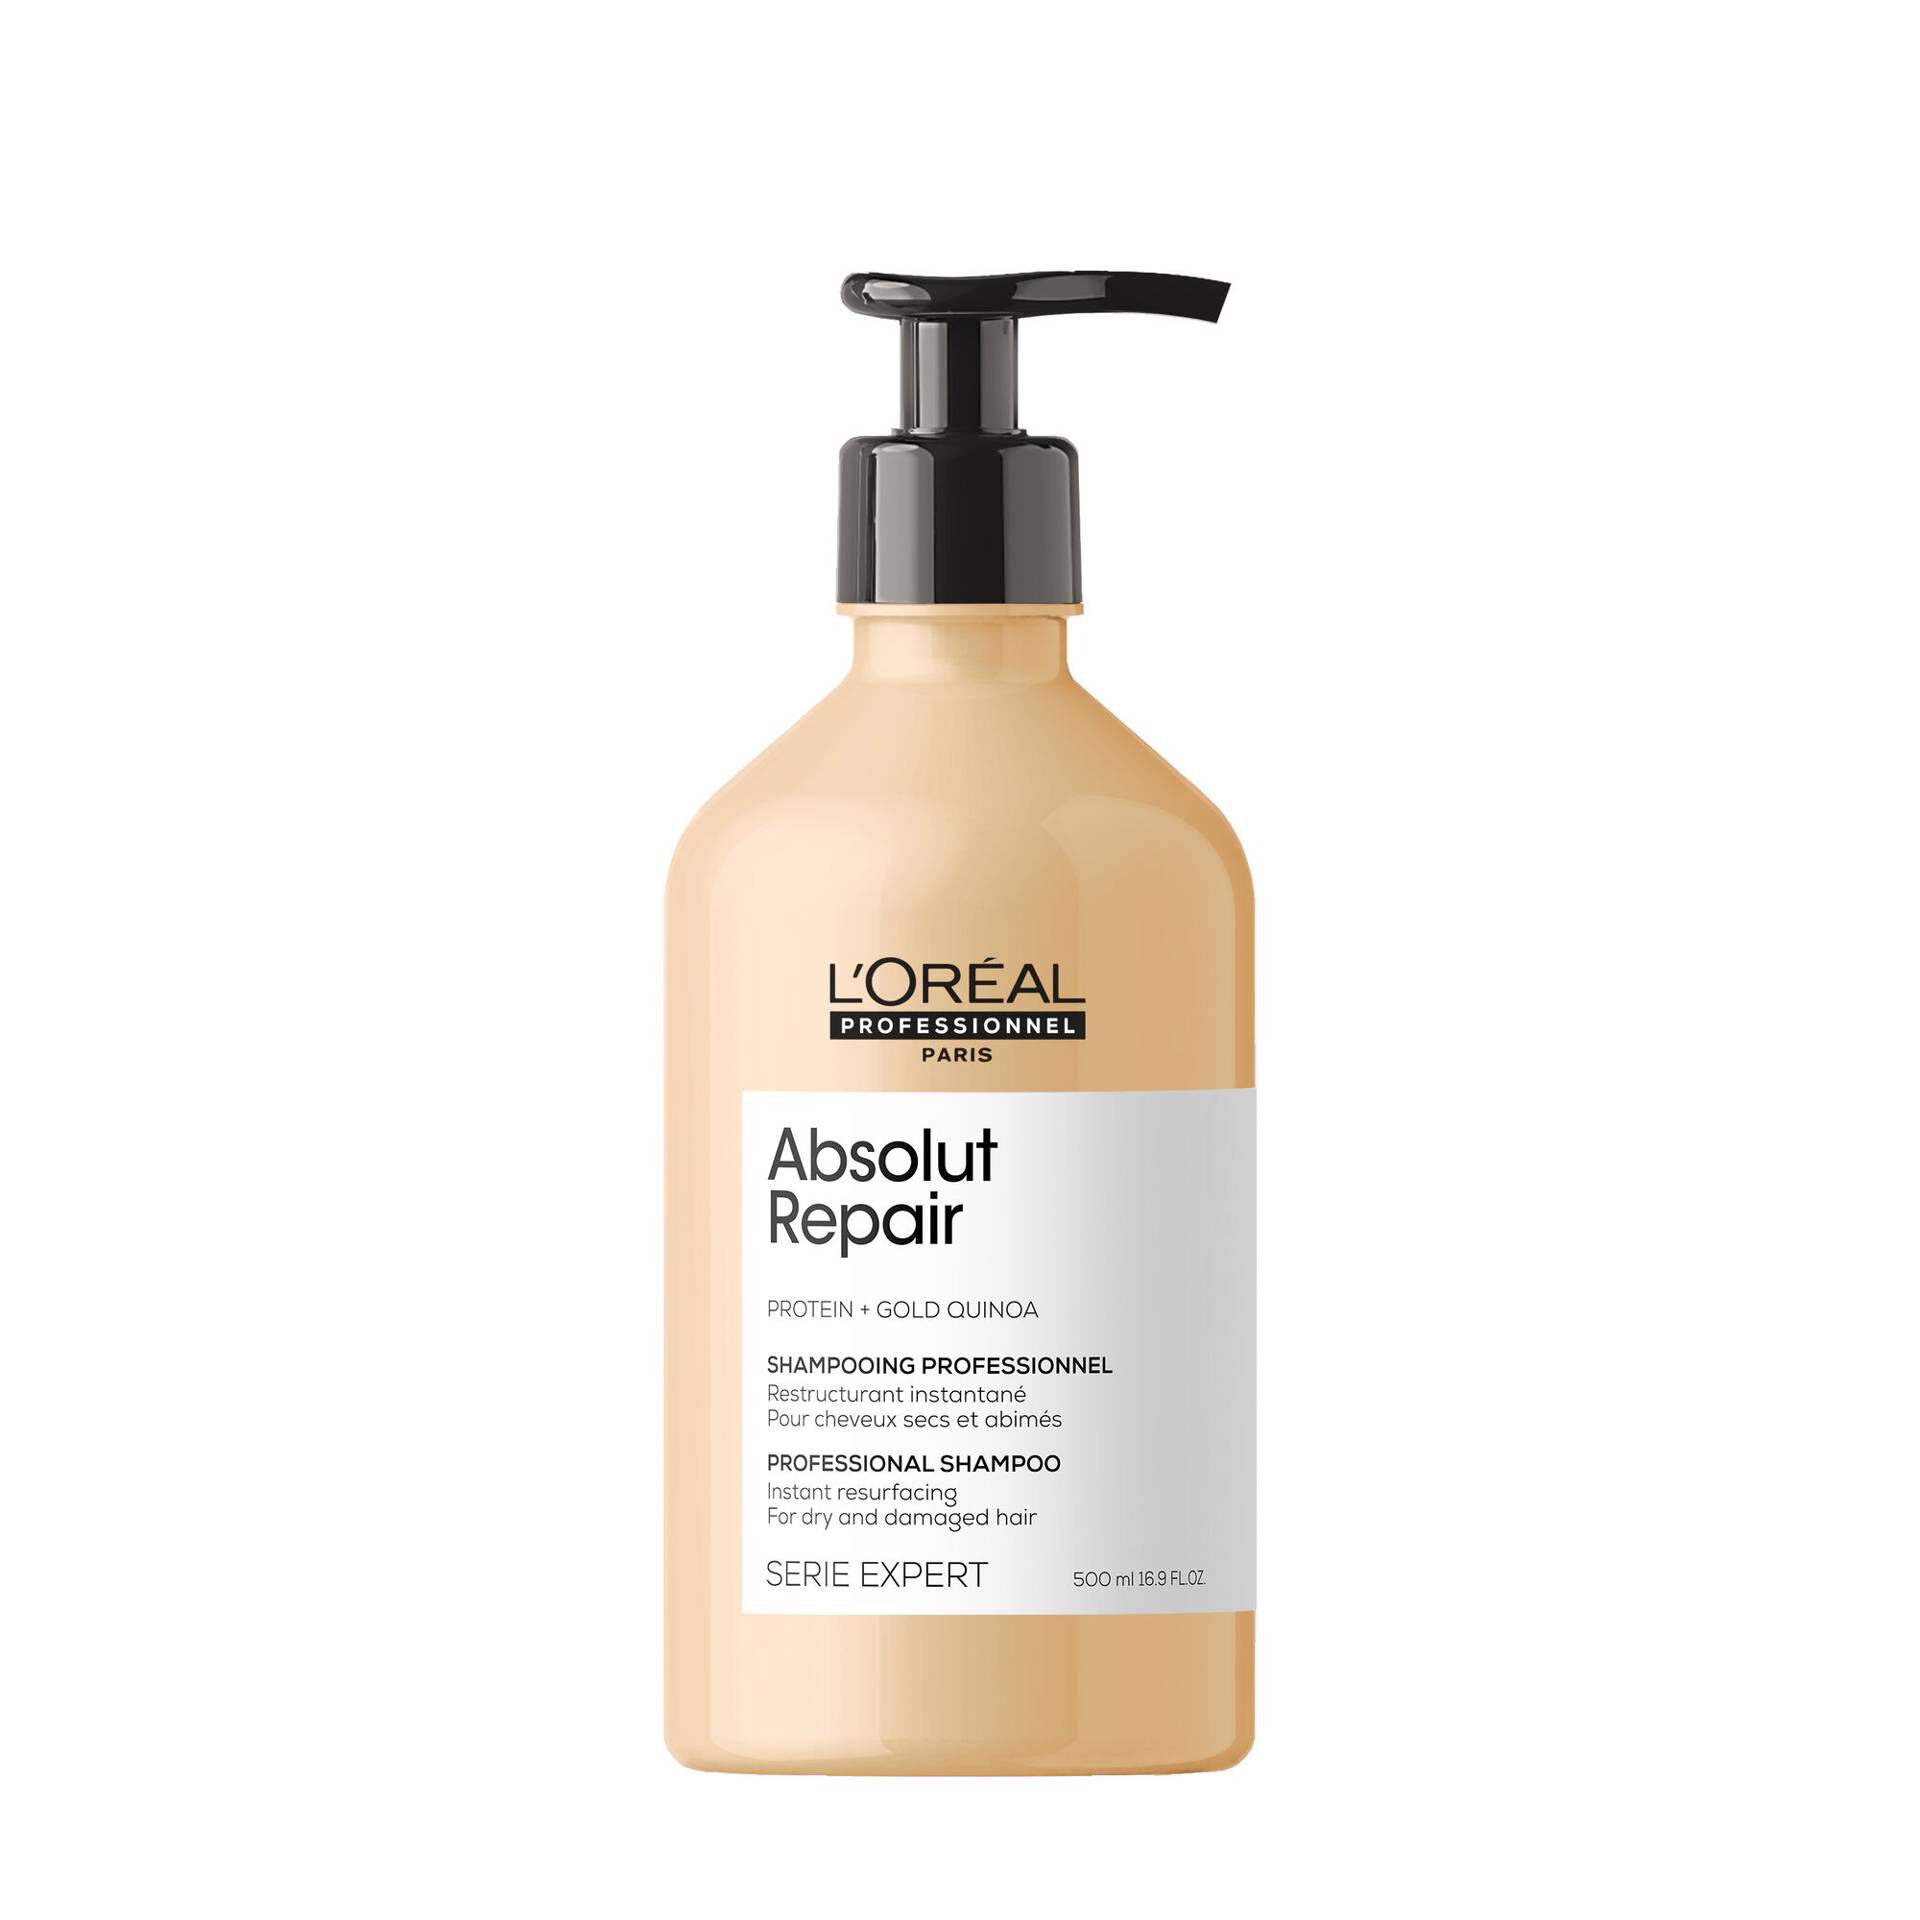 LOréal Absolut Repair Shampoo 500ml